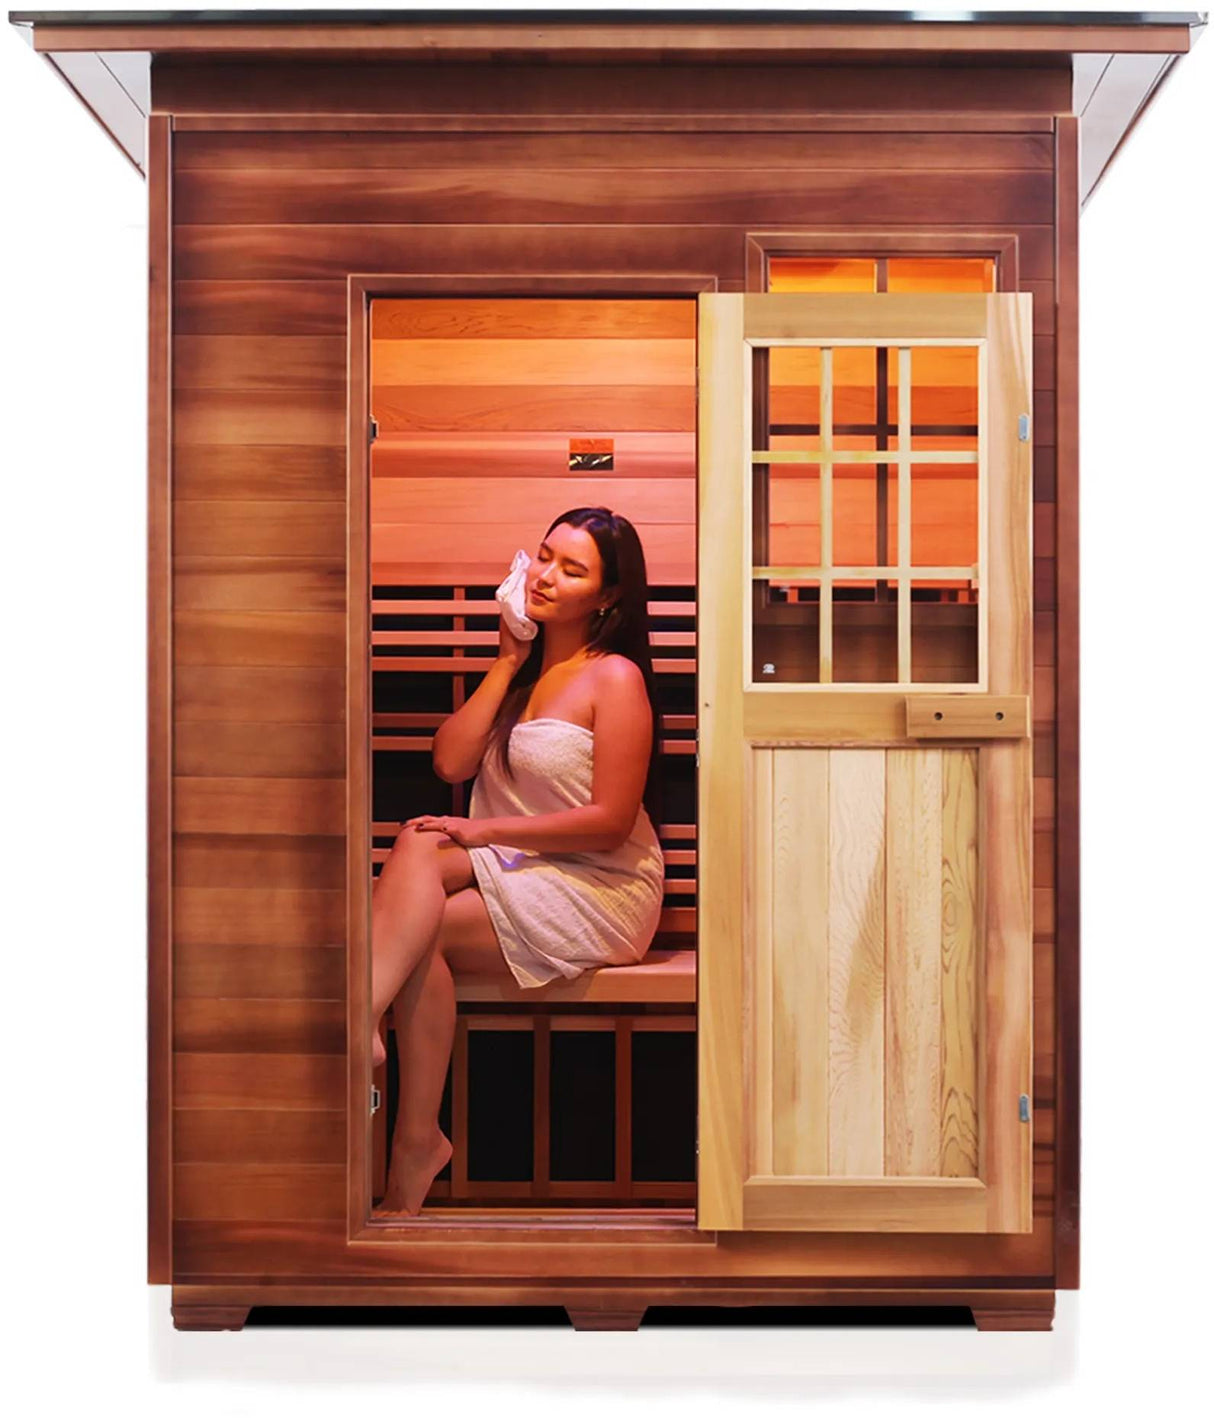 ZiahCare's Enlighten Sierra 3 Person Infrared Sauna Mockup Image 16